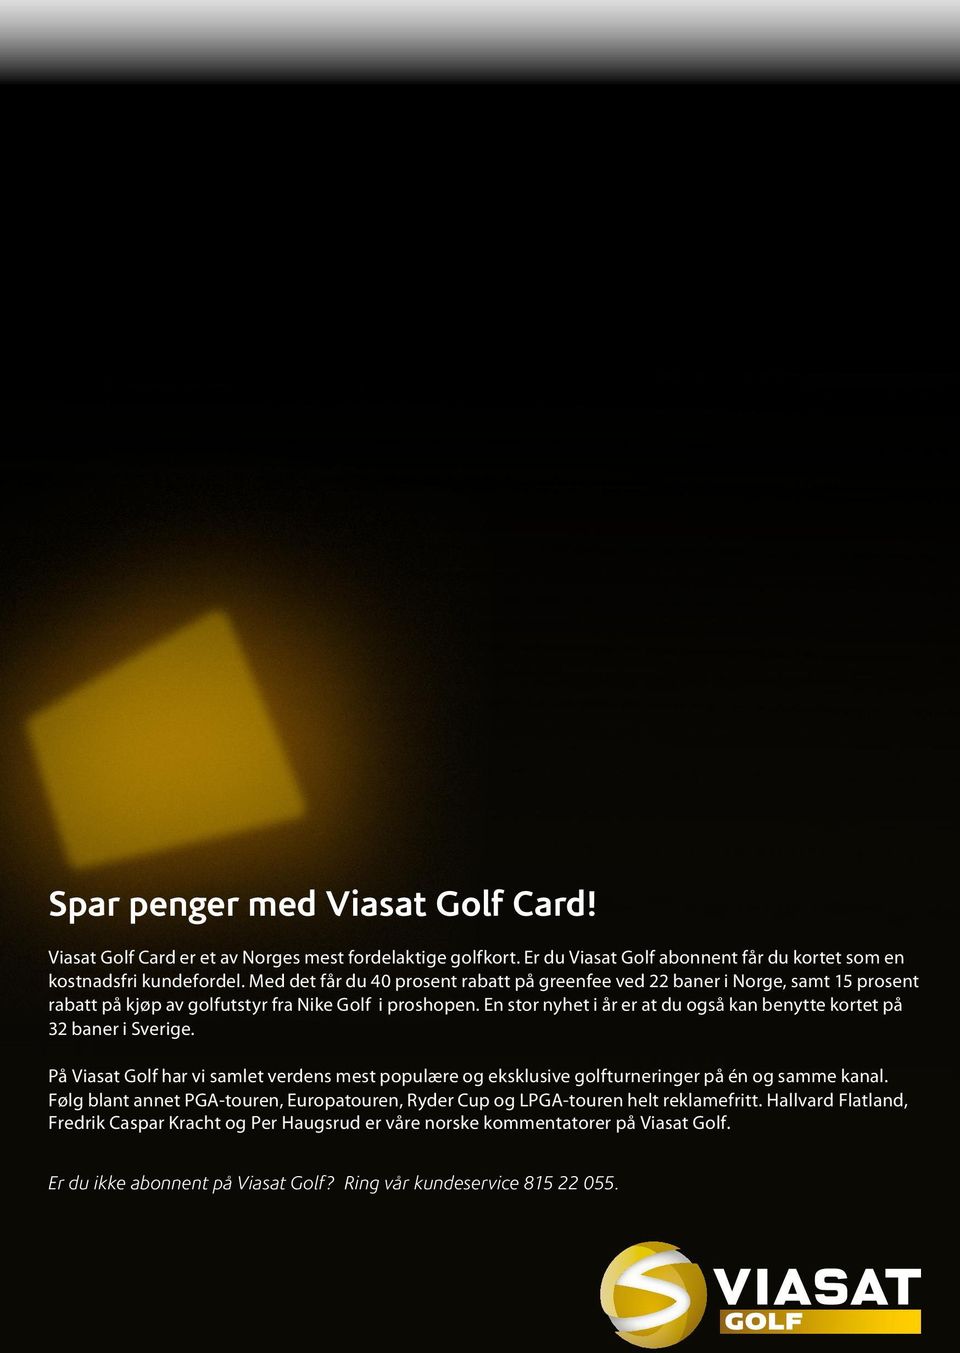 En stor nyhet i år er at du også kan benytte kortet på 32 baner i Sverige. På Viasat Golf har vi samlet verdens mest populære og eksklusive golfturneringer på én og samme kanal.